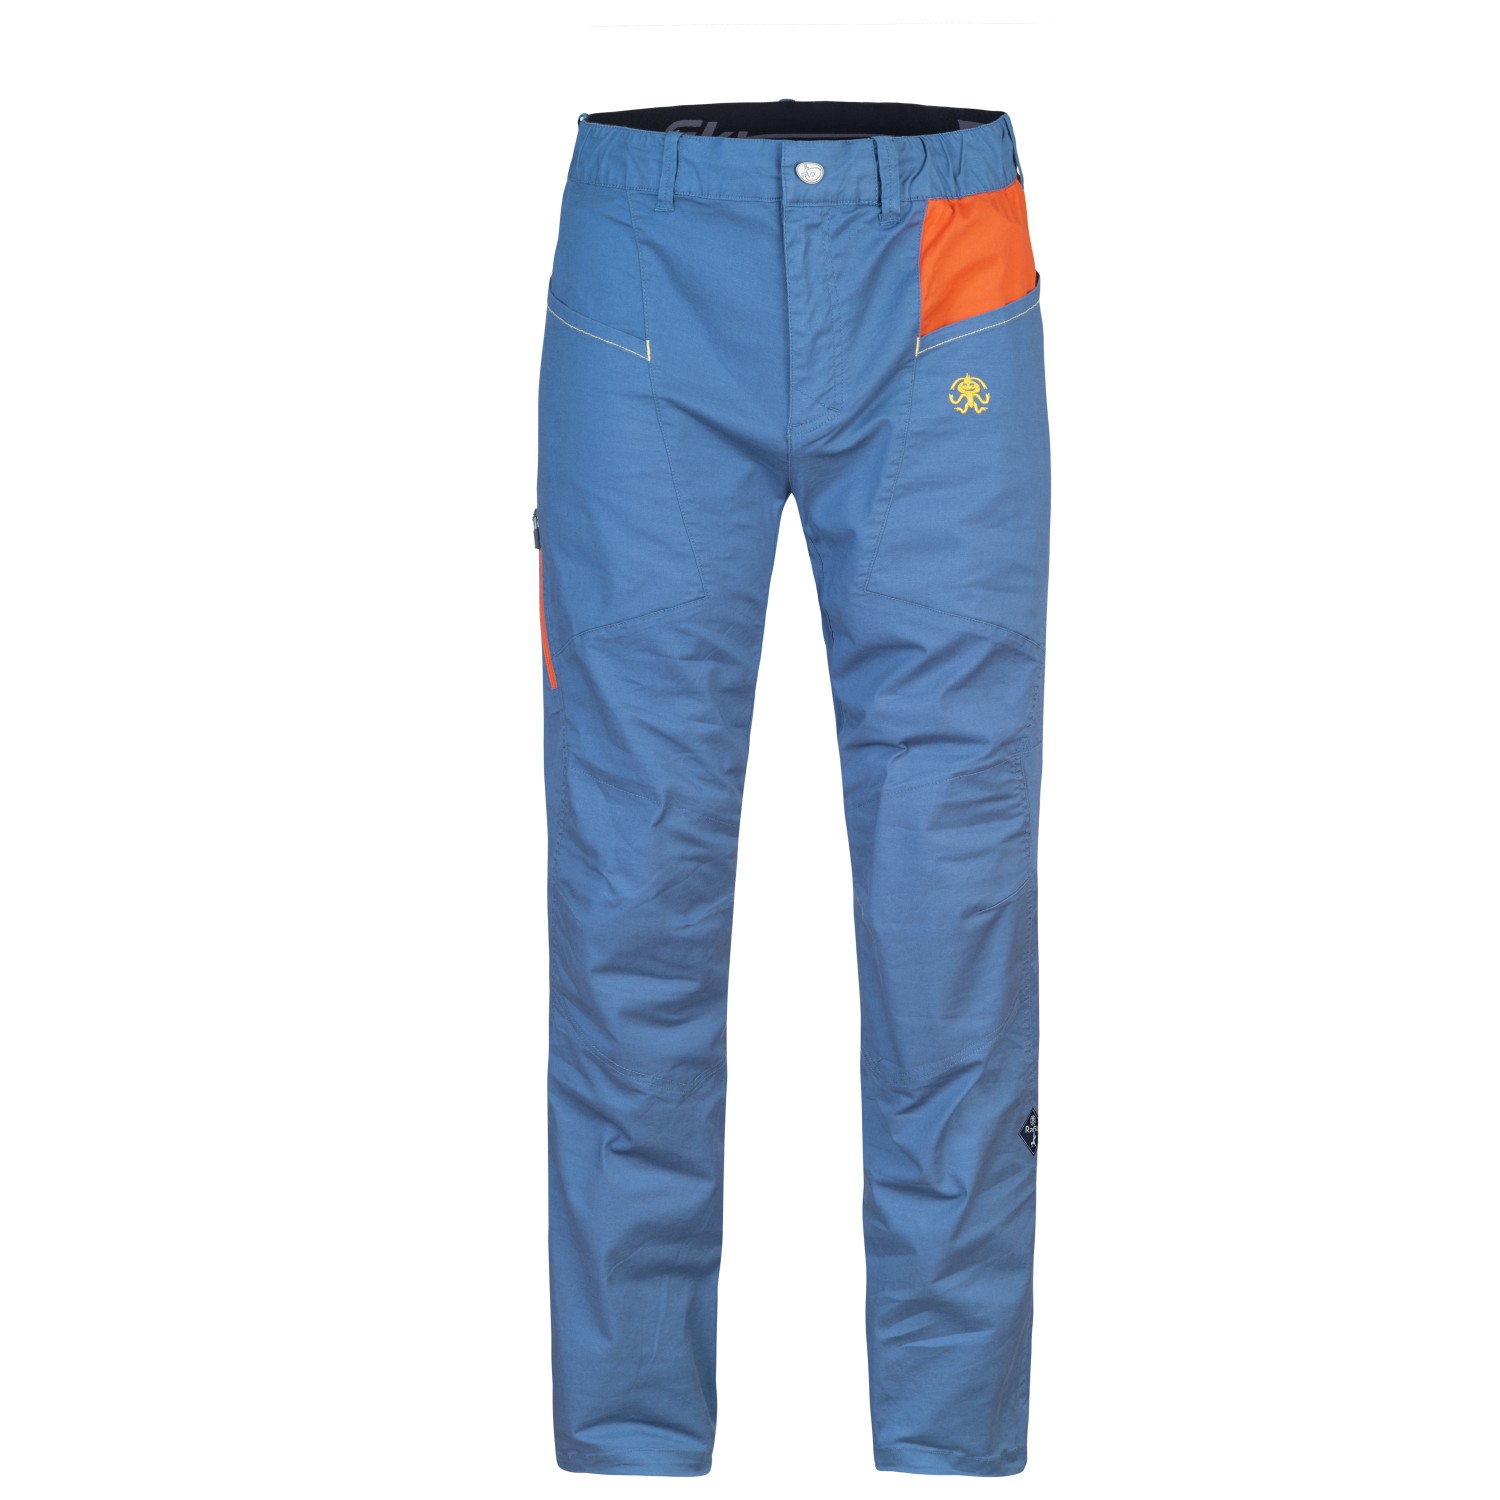 Альпинистские штаны Rafiki Crag, цвет Ensign Blue/Clay